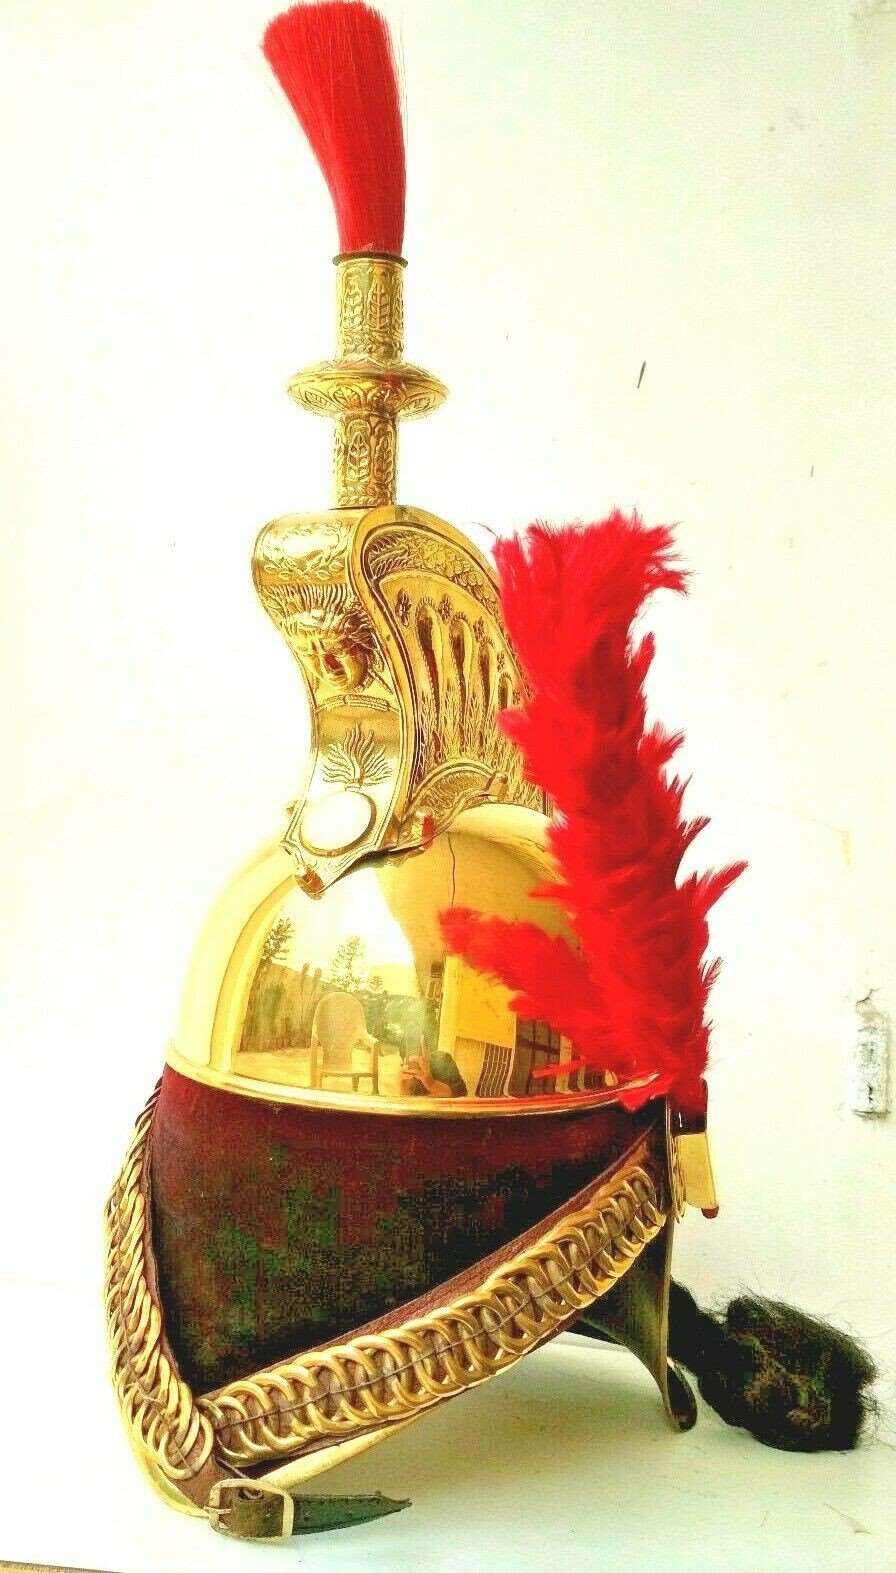 Napoleonic Era French dragoon helmet